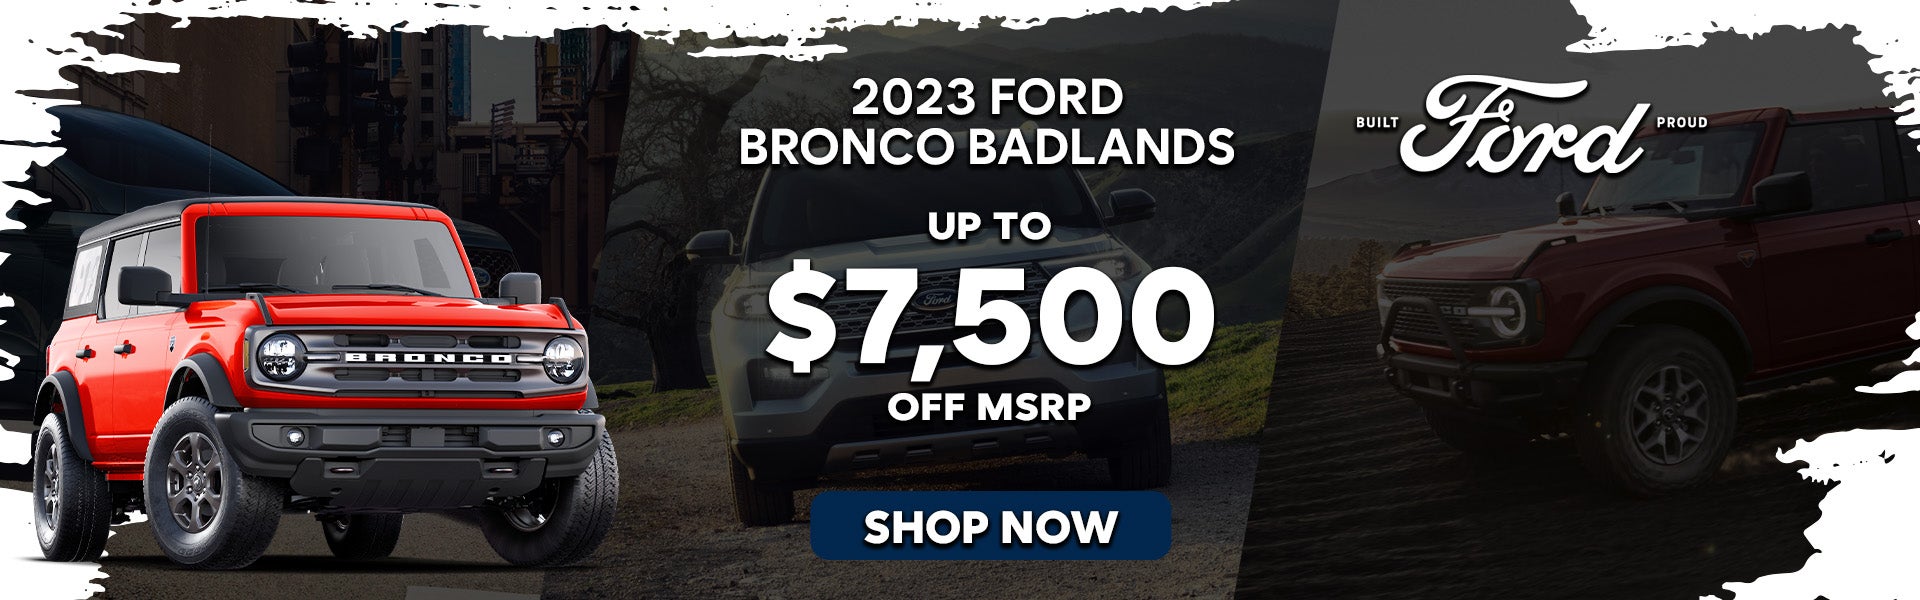 2023 Ford Bronco Badlands Special Offer